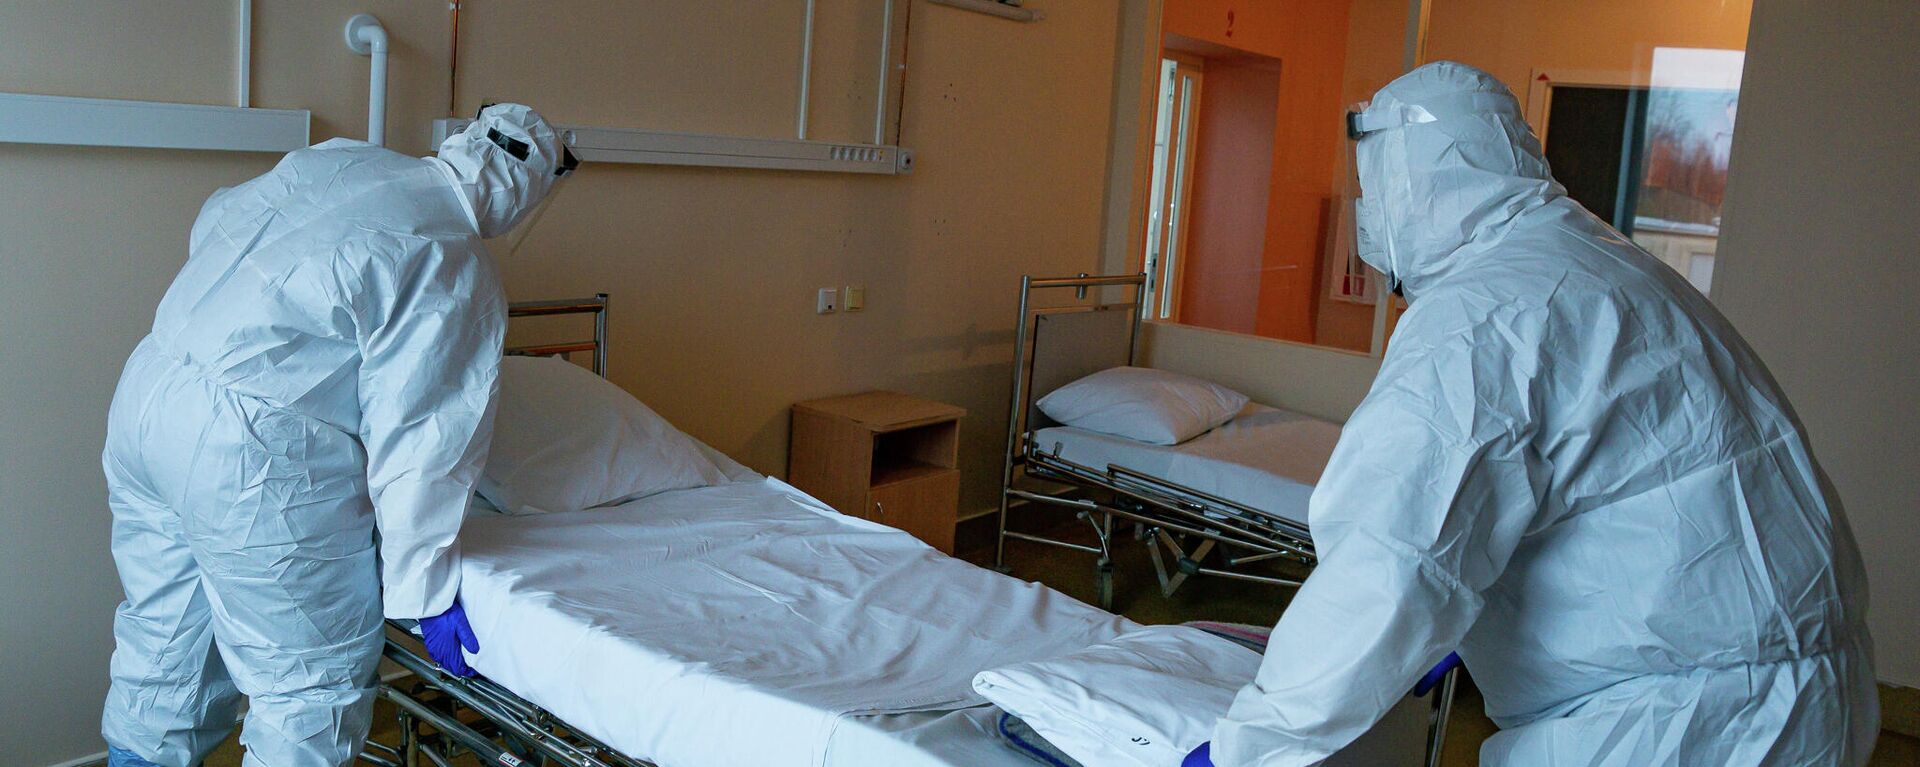 Медицинские работники готовят палату к приему пациентов с COVID-19 в Центре легочных заболеваний и туберкулеза в Даугавпилсе - Sputnik Латвия, 1920, 24.11.2021